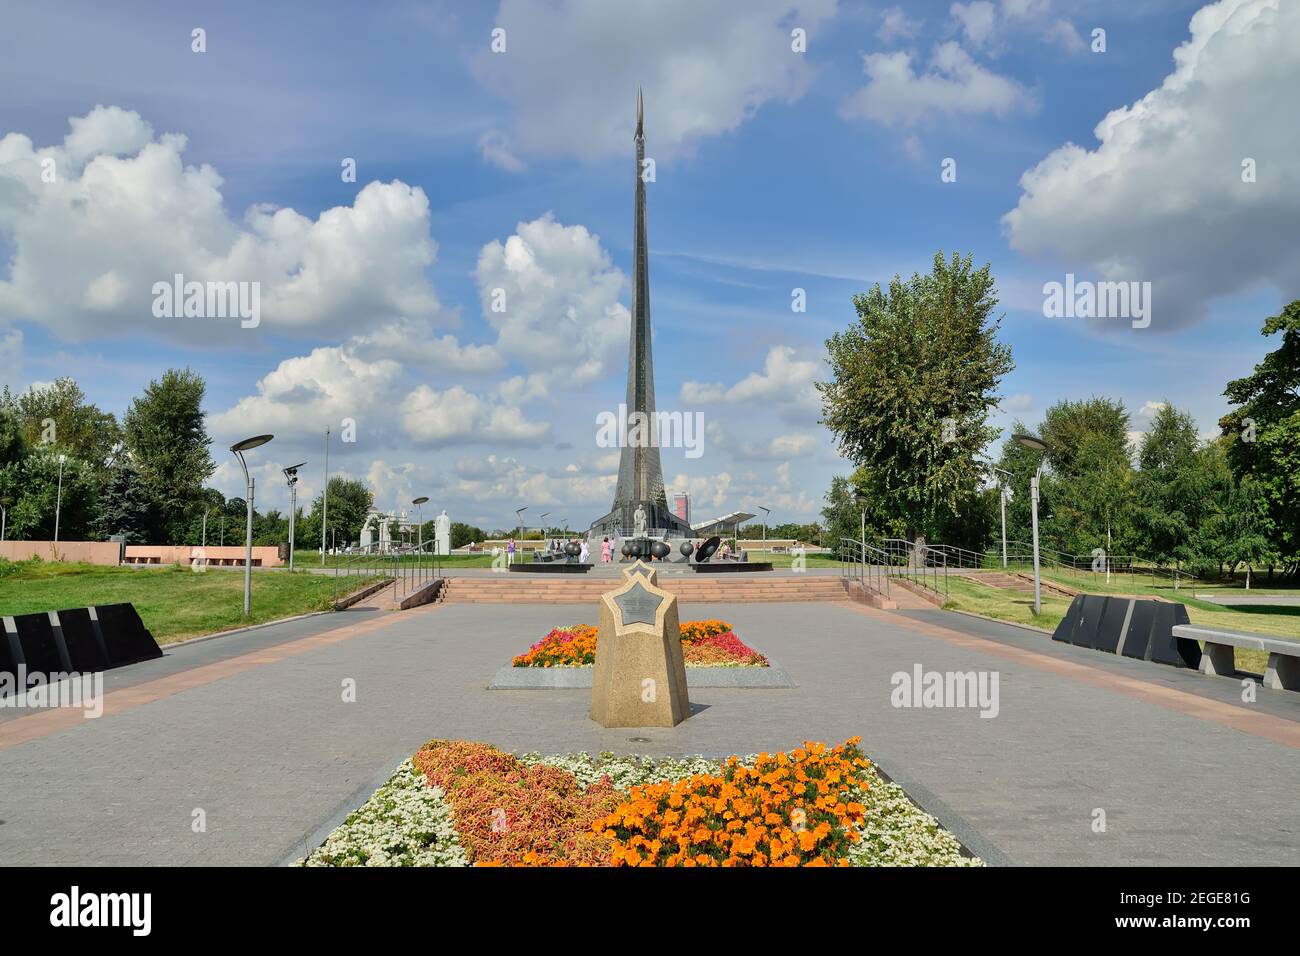 Moscou, Russie - 25 août 2020 : vue sur l'allée des cosmonautes et le monument aux conquérants de l'espace dans le Musée du cosmonautics. Moscou, R Banque D'Images